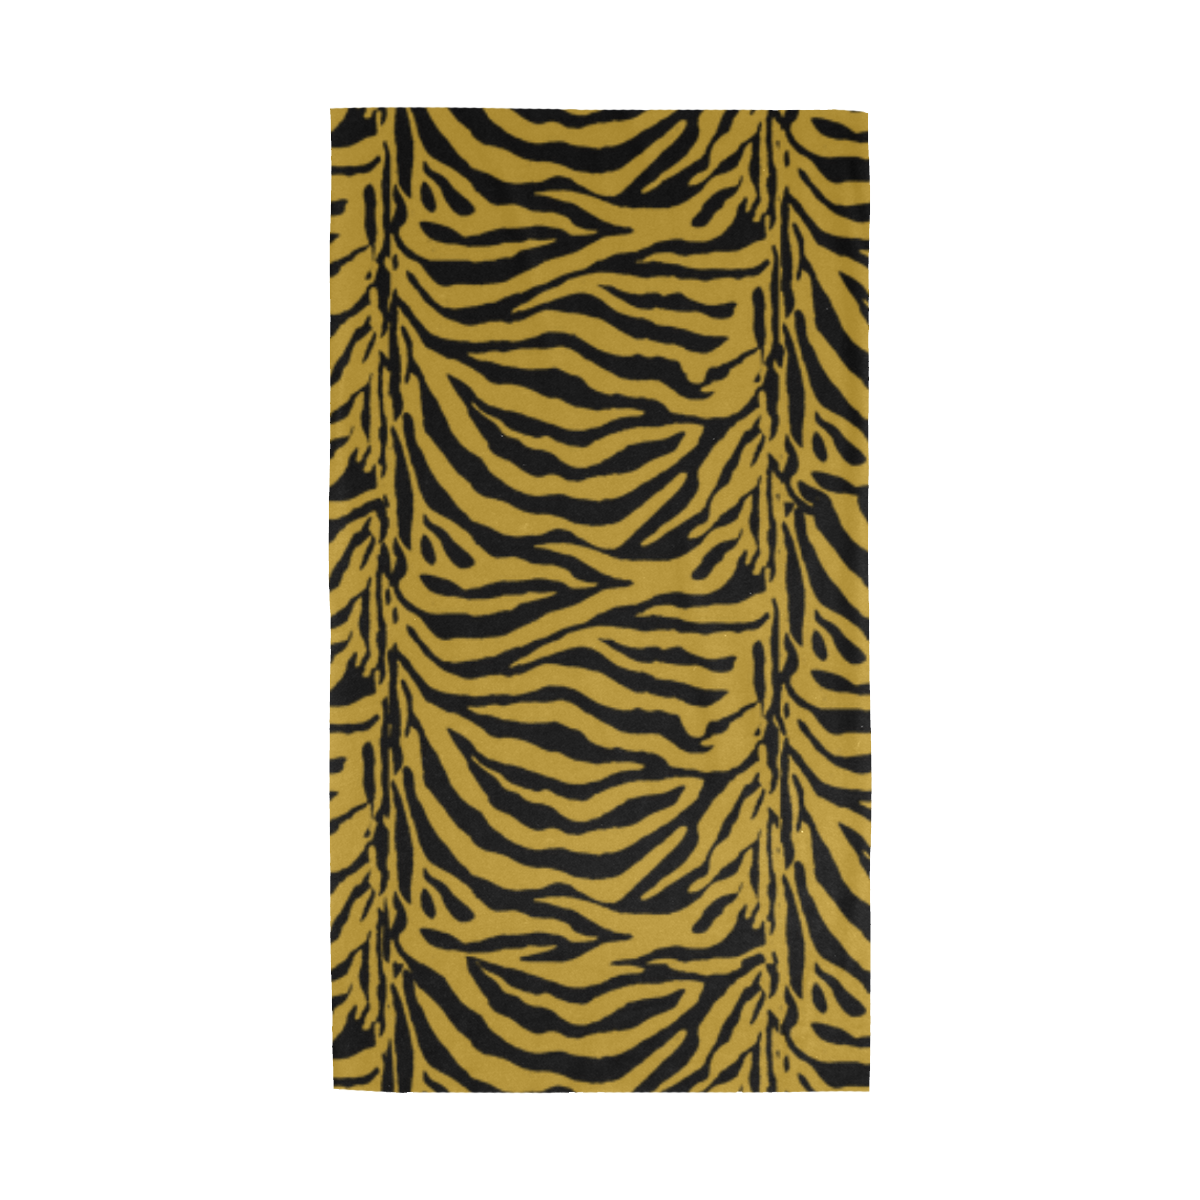 Zebra Animal Pattern on Gold Multifunctional Headwear